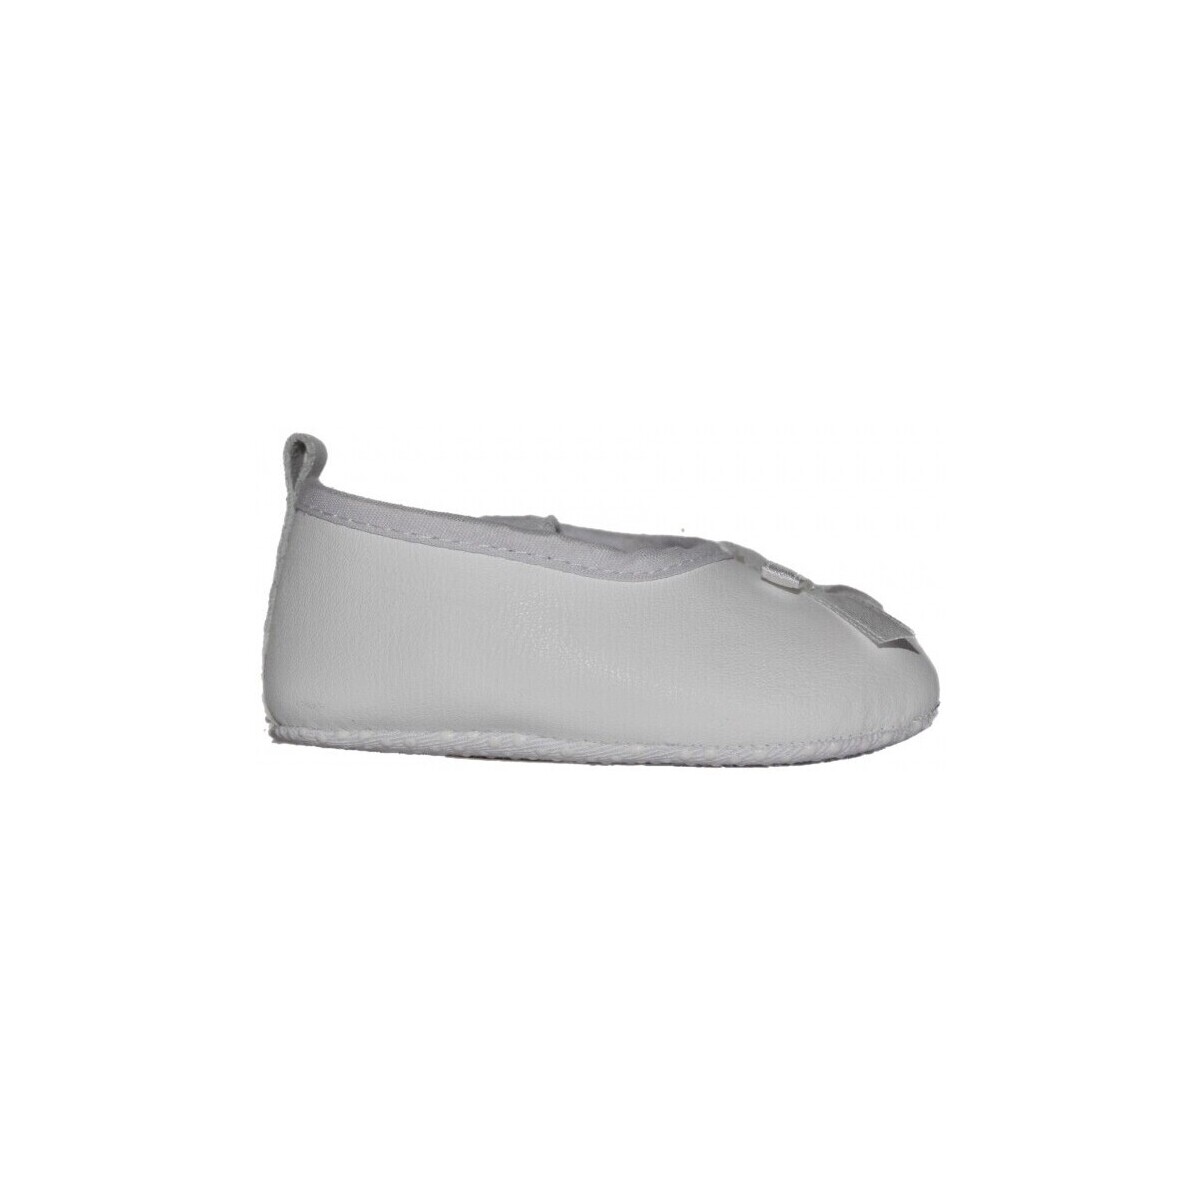 Παπούτσια Αγόρι Σοσονάκια μωρού Colores 9182-15 Άσπρο